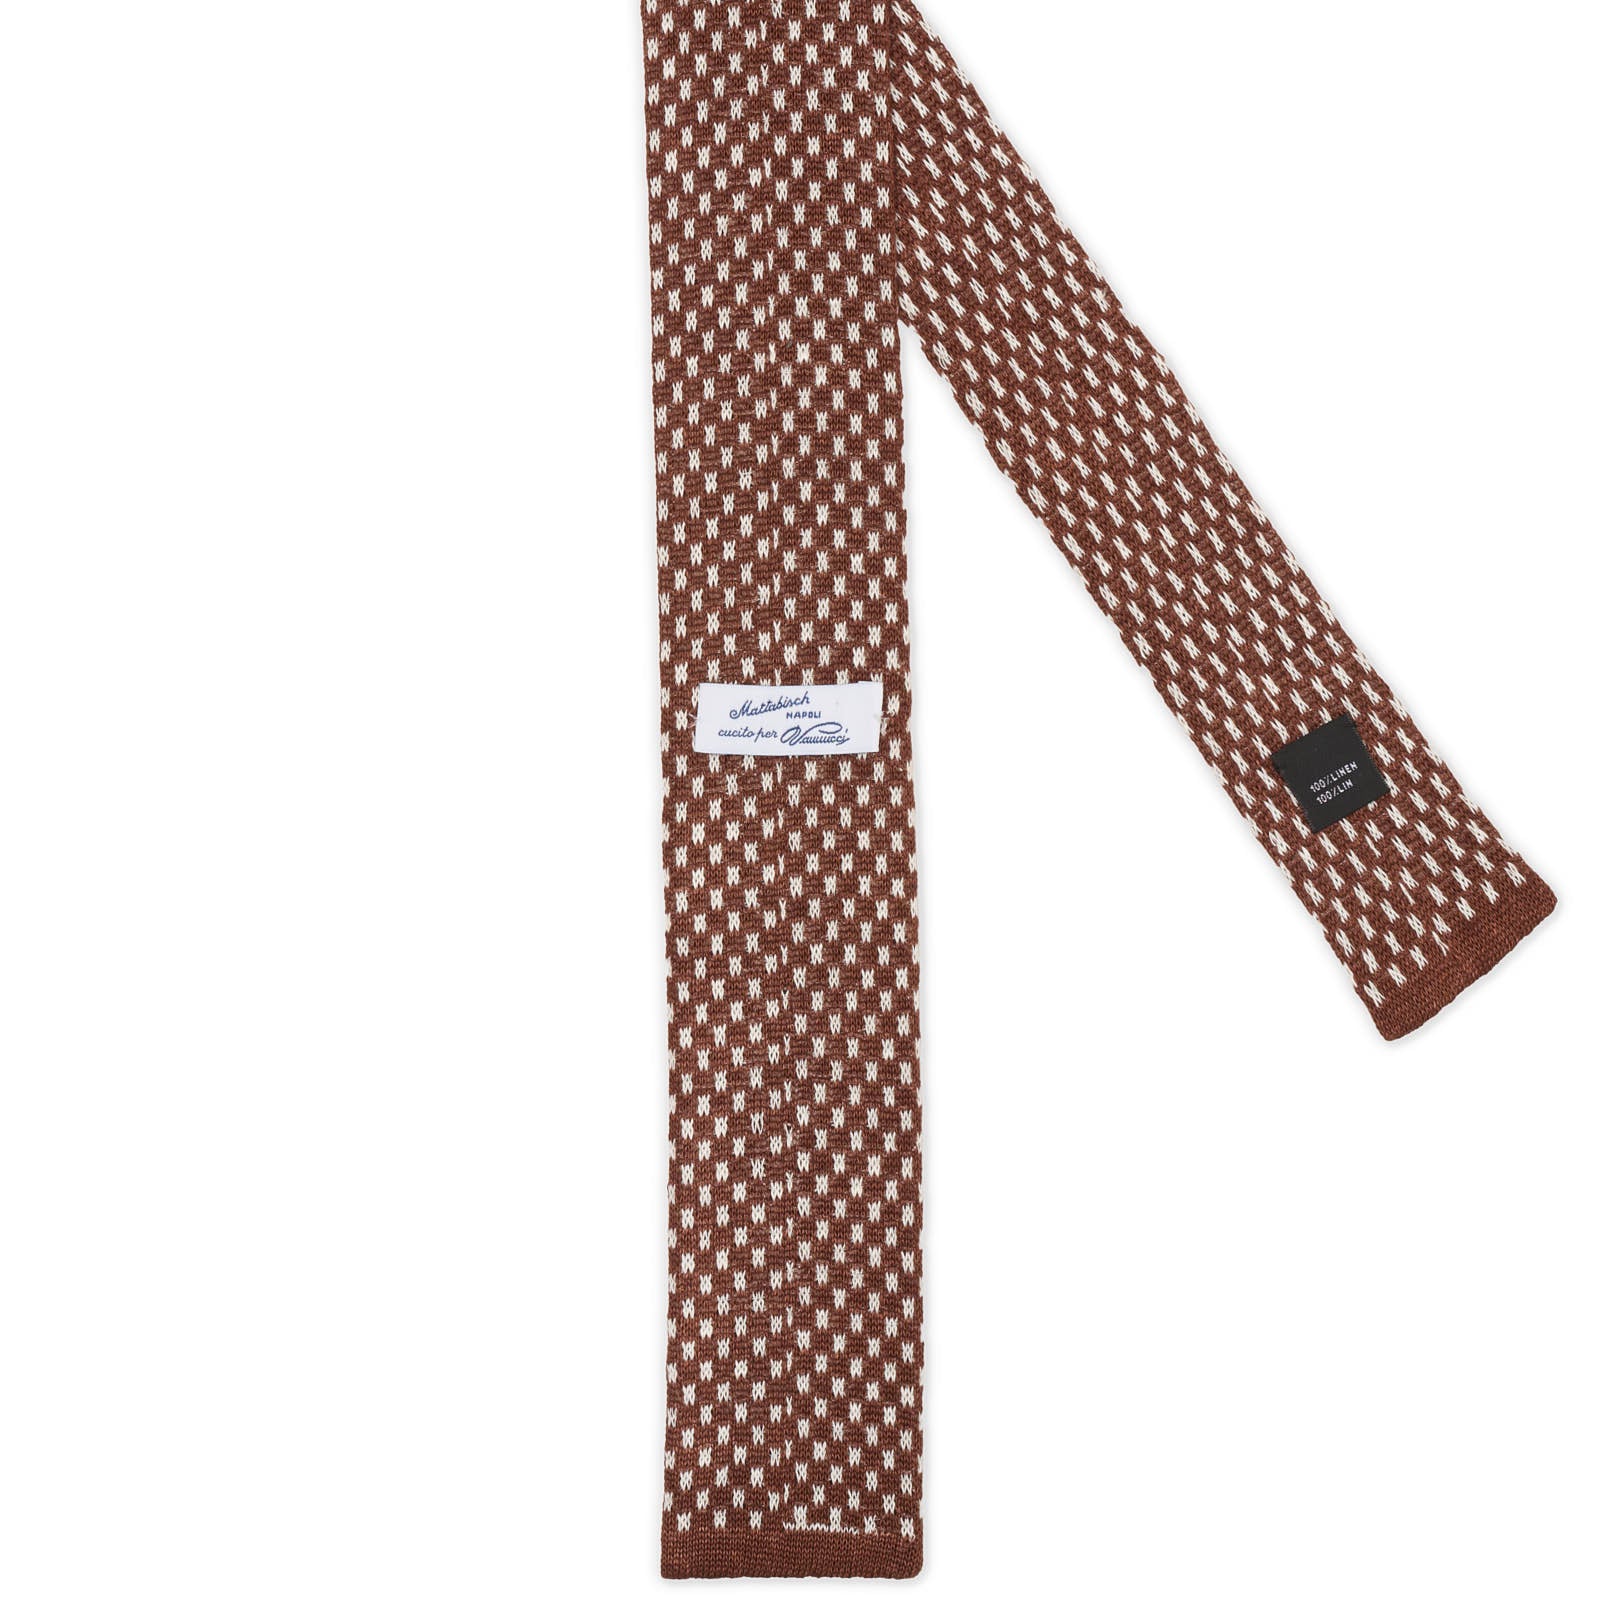 MATTABISCH FOR VANNUCCI Brown Dotted Linen Knit Tie NEW